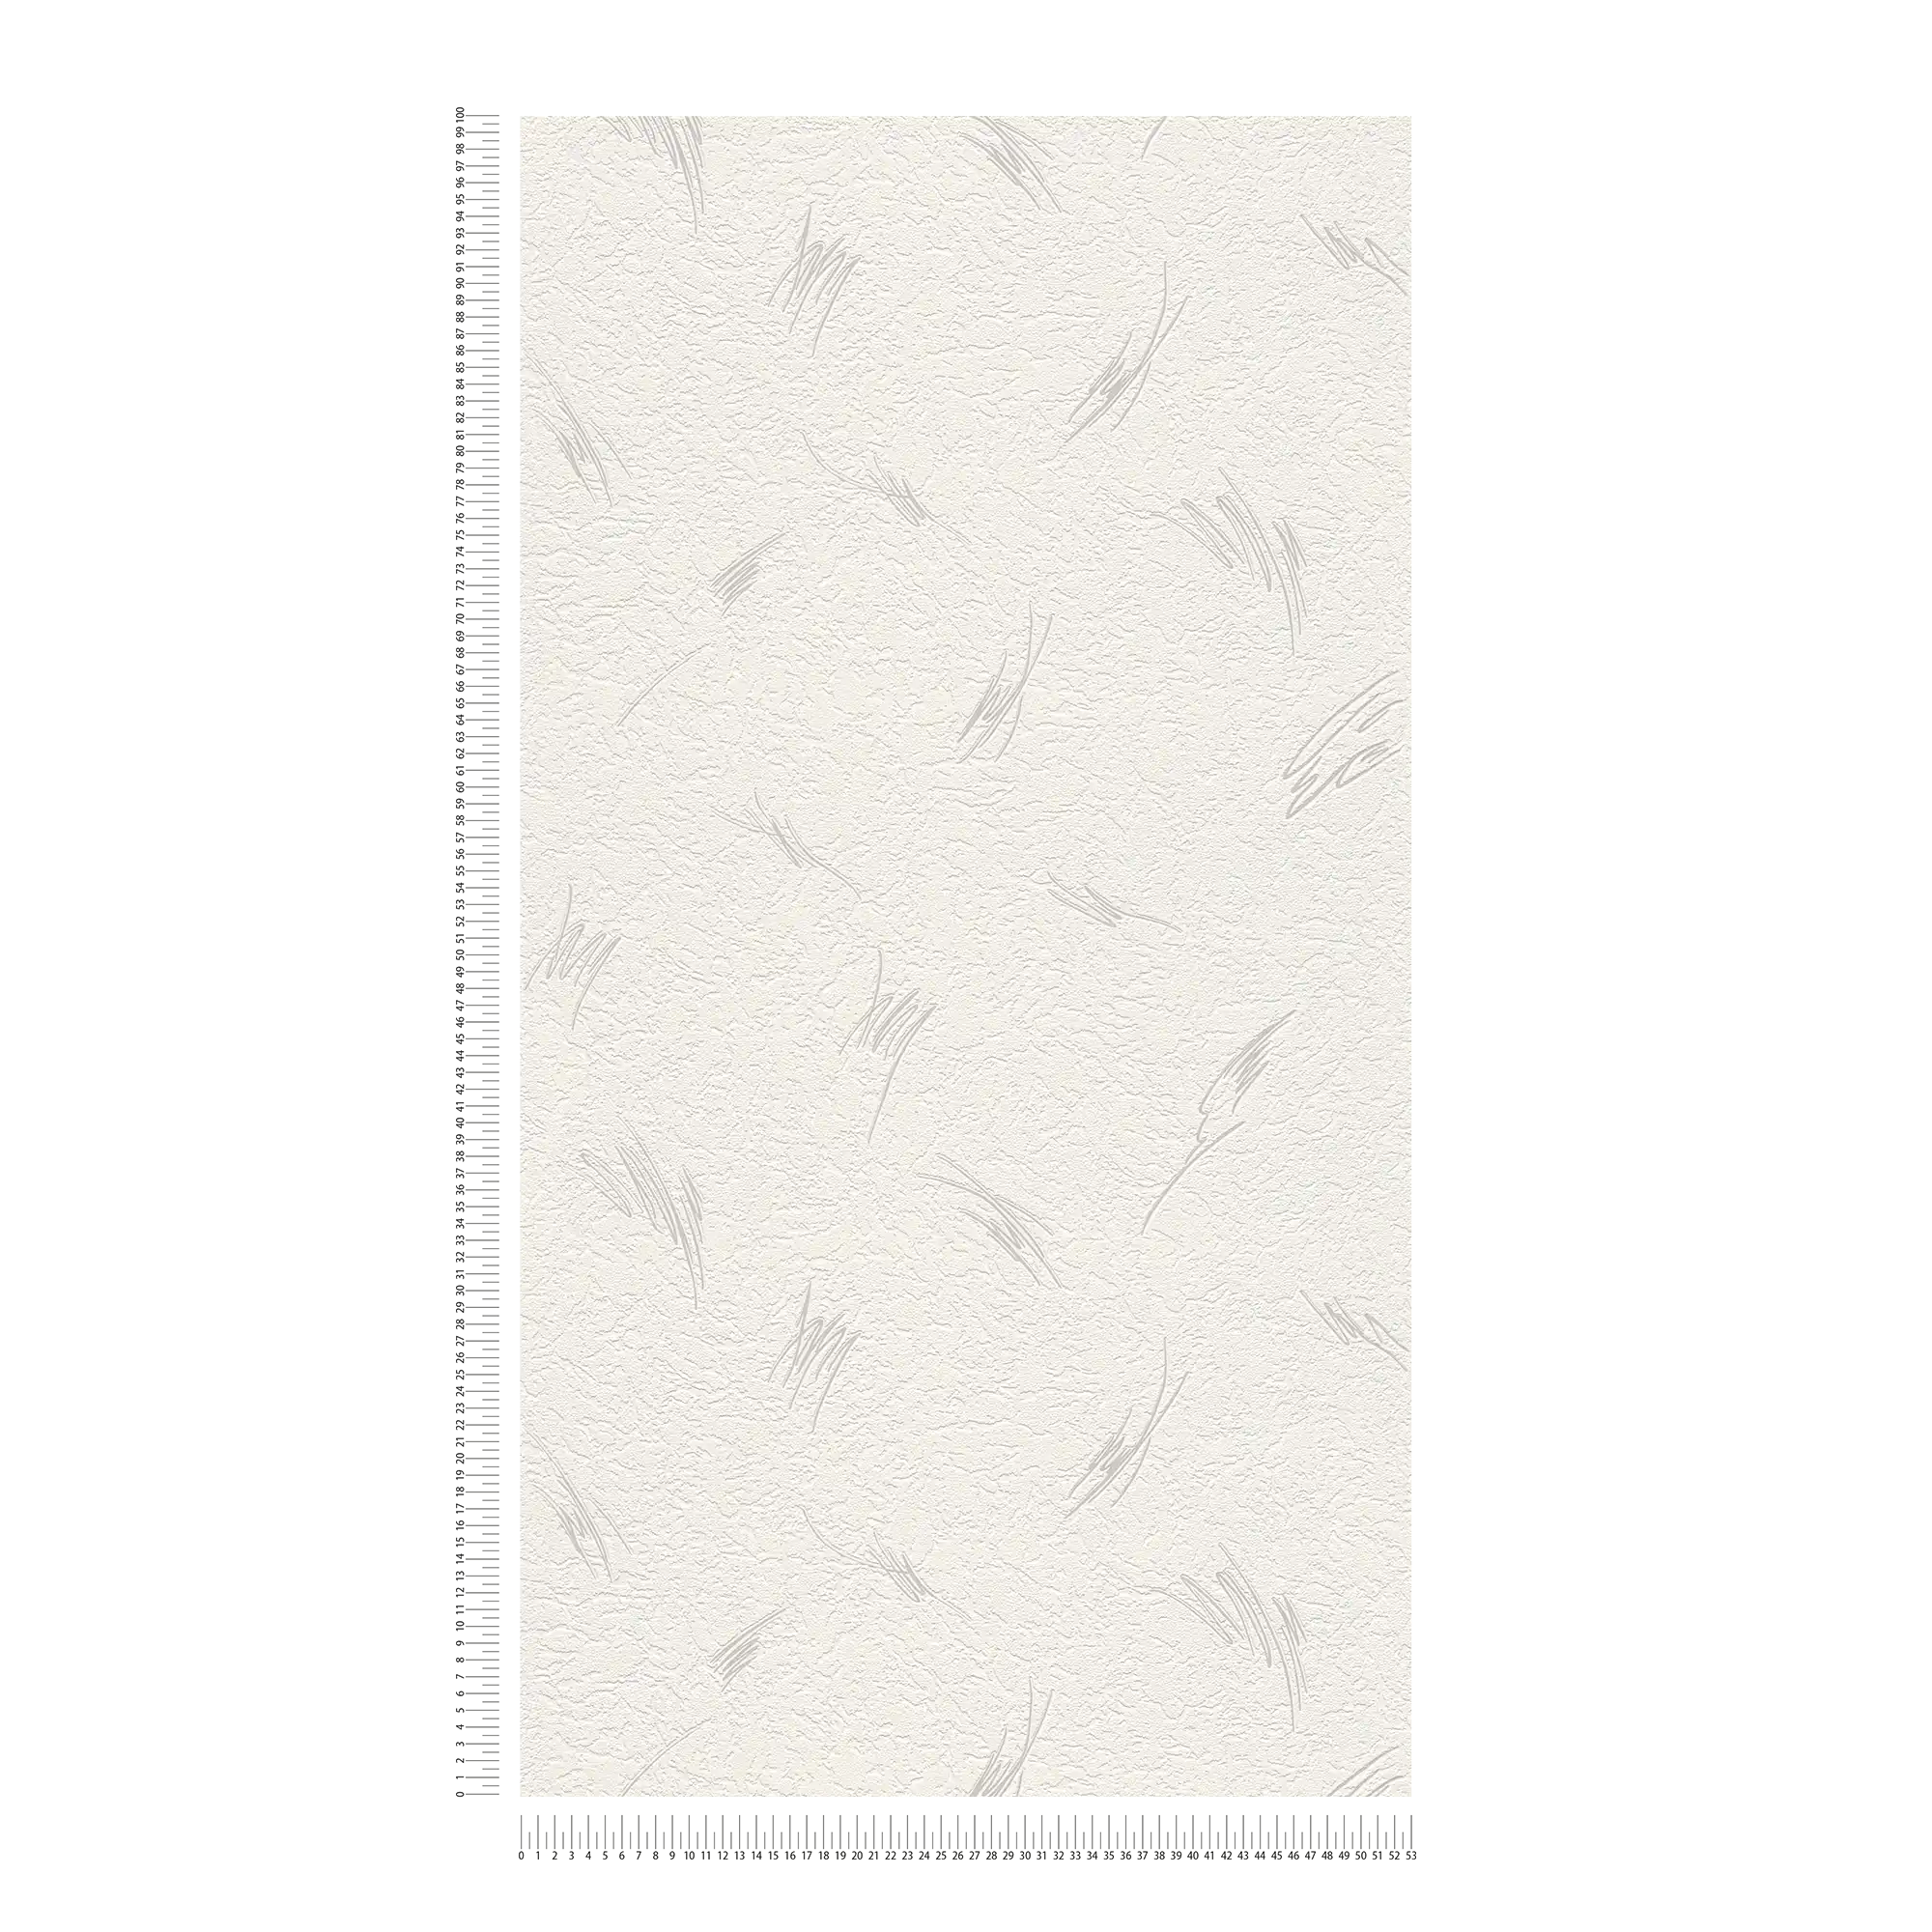             Gipsoptisch behang met abstract patroon - metallic, wit
        